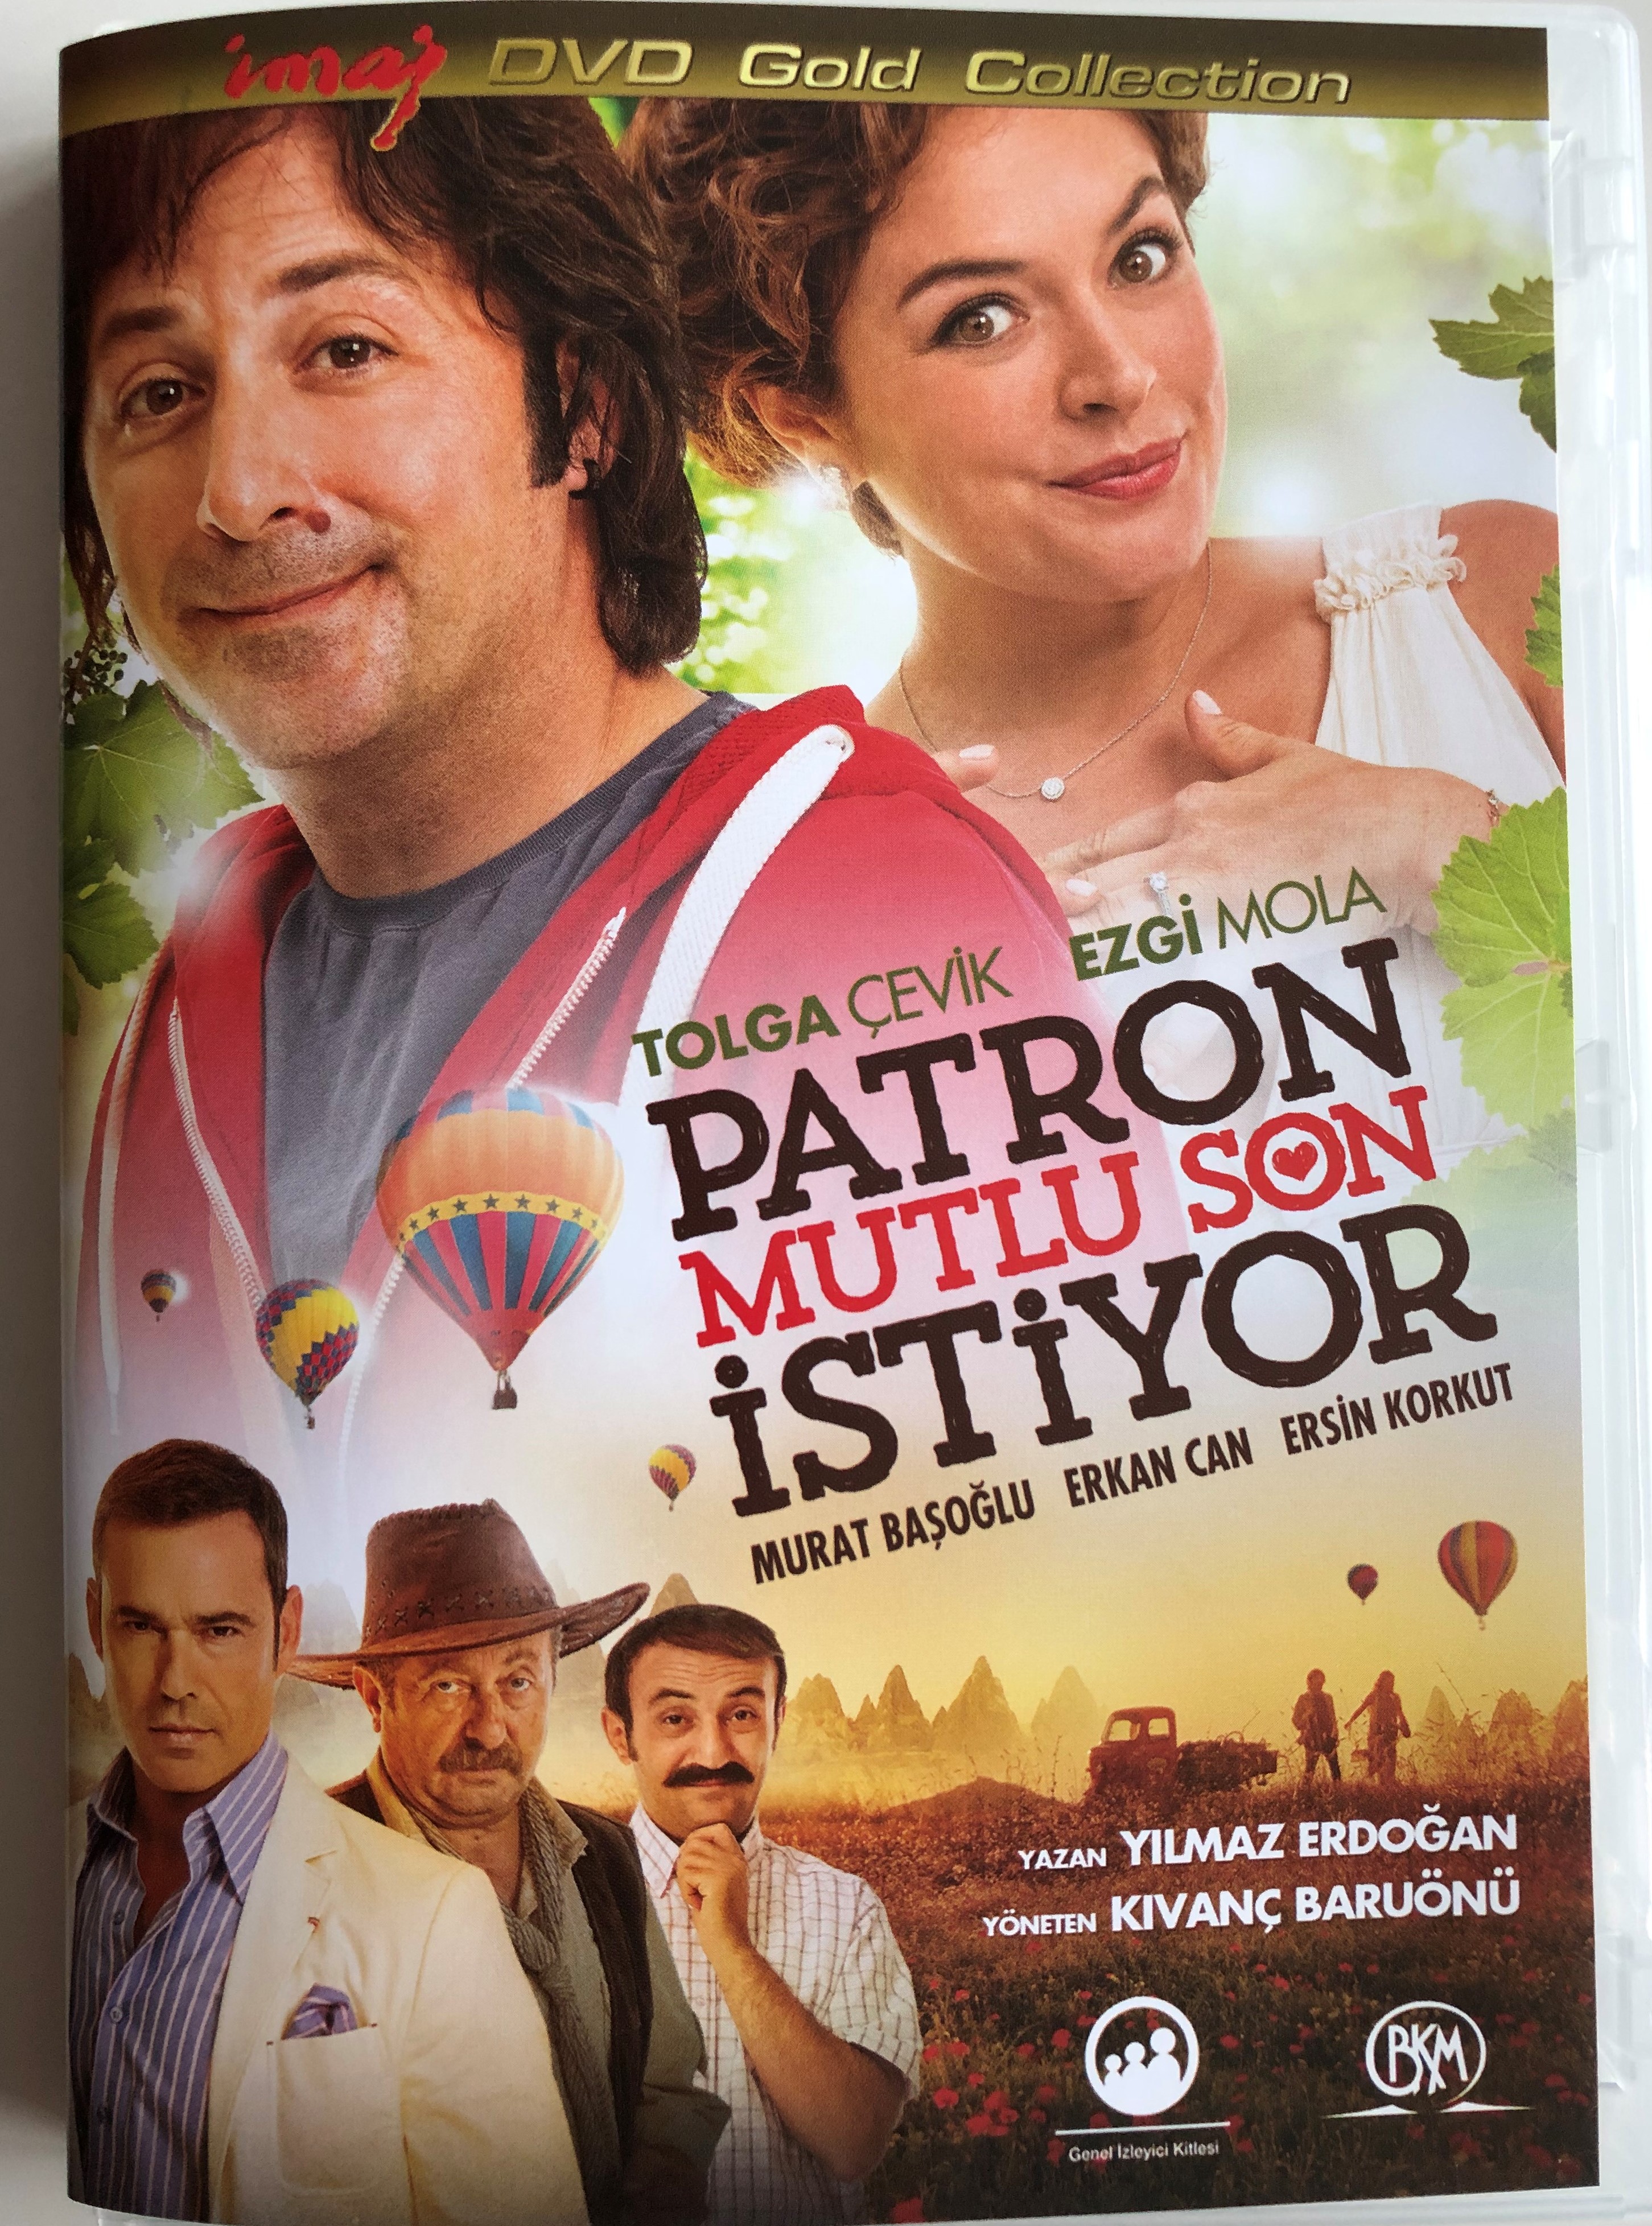 patron-mutlu-son-istiyor-dvd-2013-directed-by-k-van-baru-n-starring-tolga-evik-ezgi-mola-1-.jpg